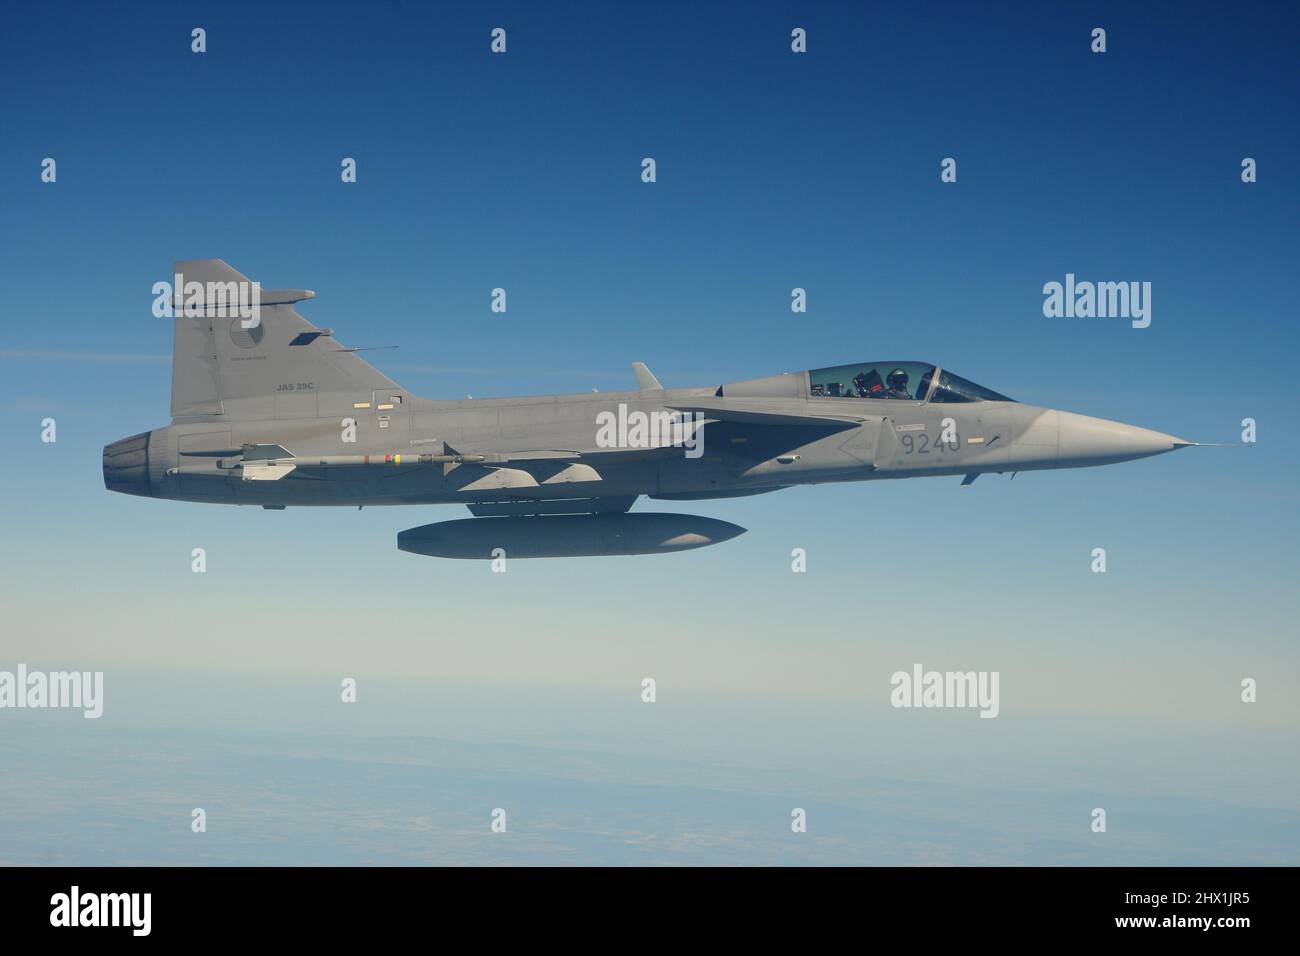 Luchadores de defensa aérea durante una sesión de fotos aire a aire (QRA) Foto de stock